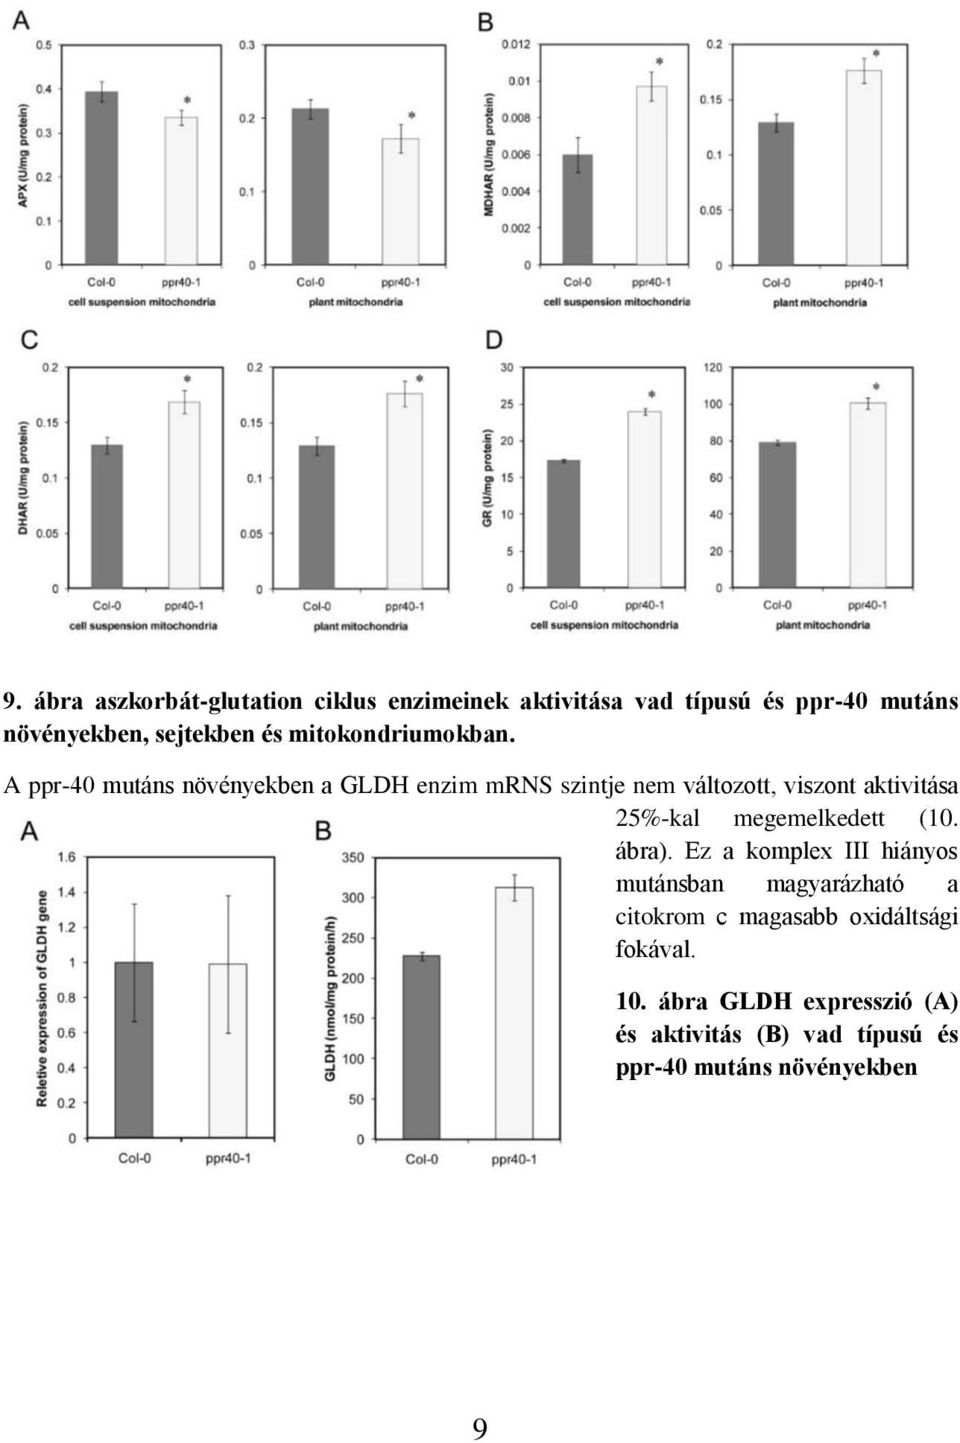 A ppr-40 mutáns növényekben a GLDH enzim mrns szintje nem változott, viszont aktivitása 25%-kal